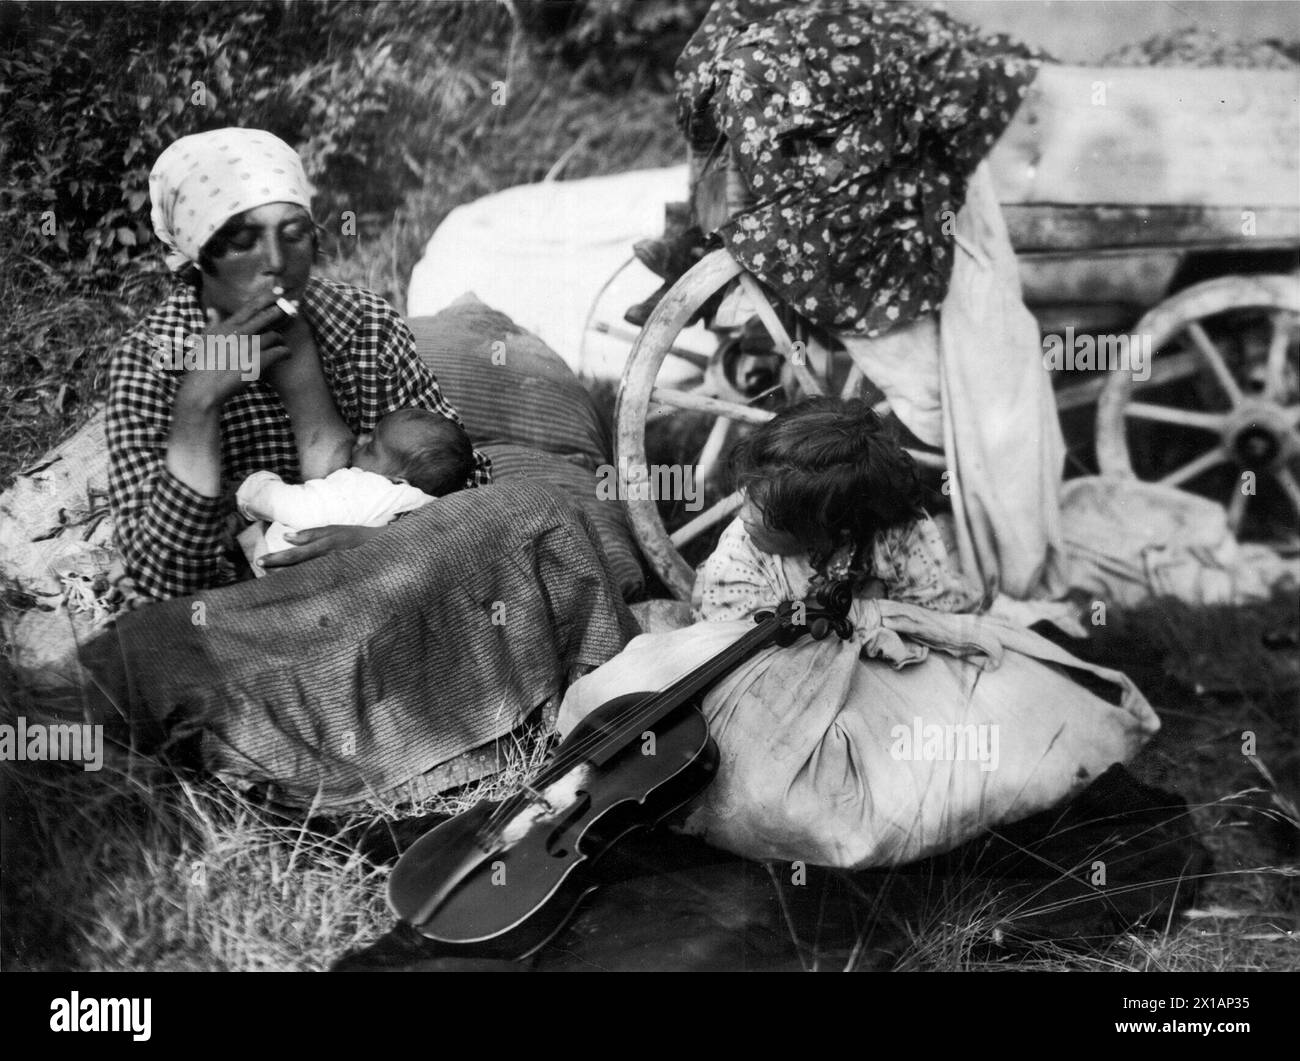 Zigeunerin, stinkende Mutter mit Säuberung an der Büste, auf Grasboden neben dem Wagenrad sitzend, davor eines weiteren Details Kind hinter dem Bündel - dabei Violine Lean - sitzend, 1930 - 19300101 PD21383 - Rechteinfo: Rights Managed (RM) Stockfoto